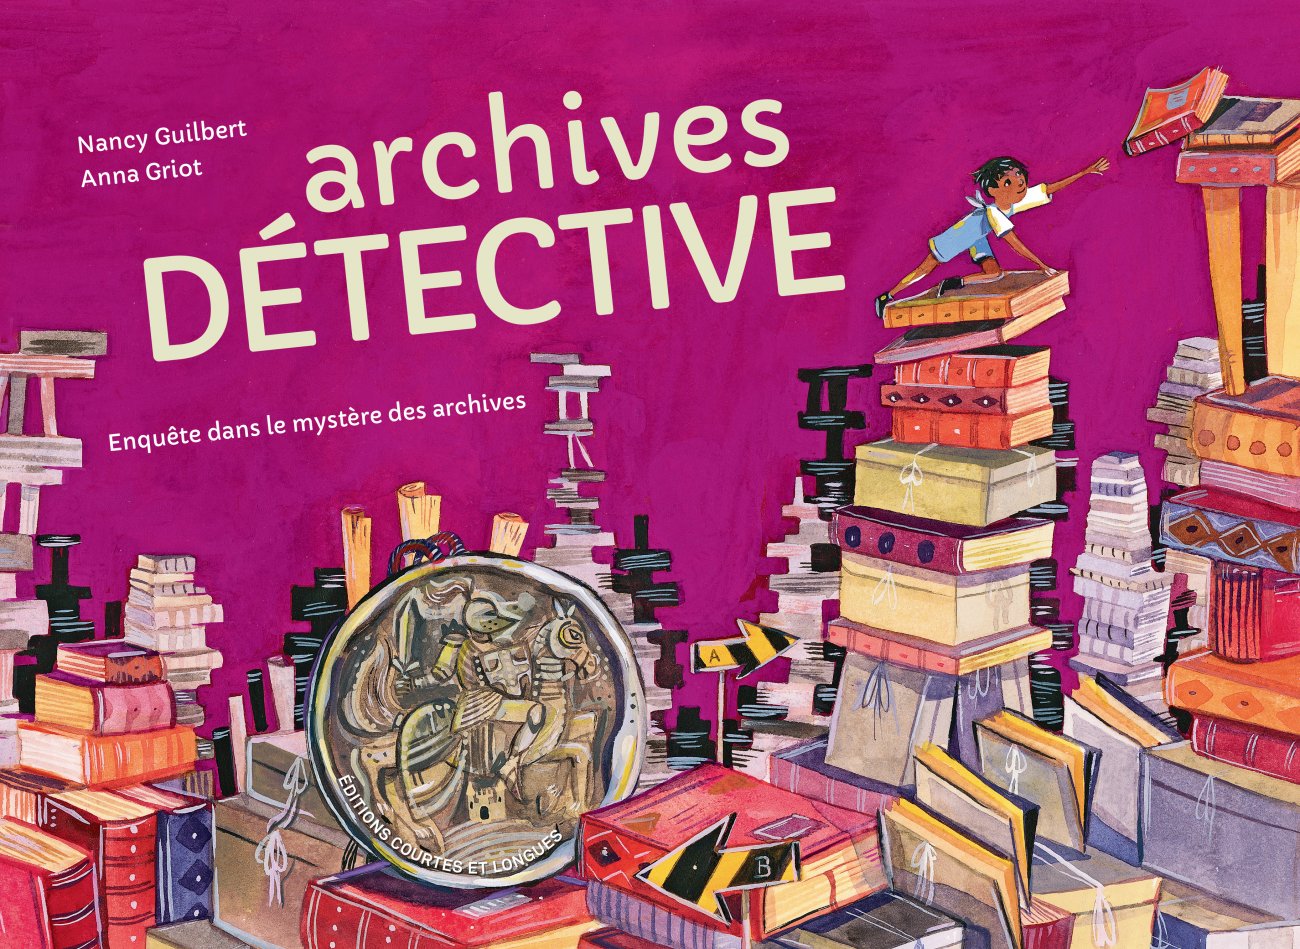 "Archives détective"